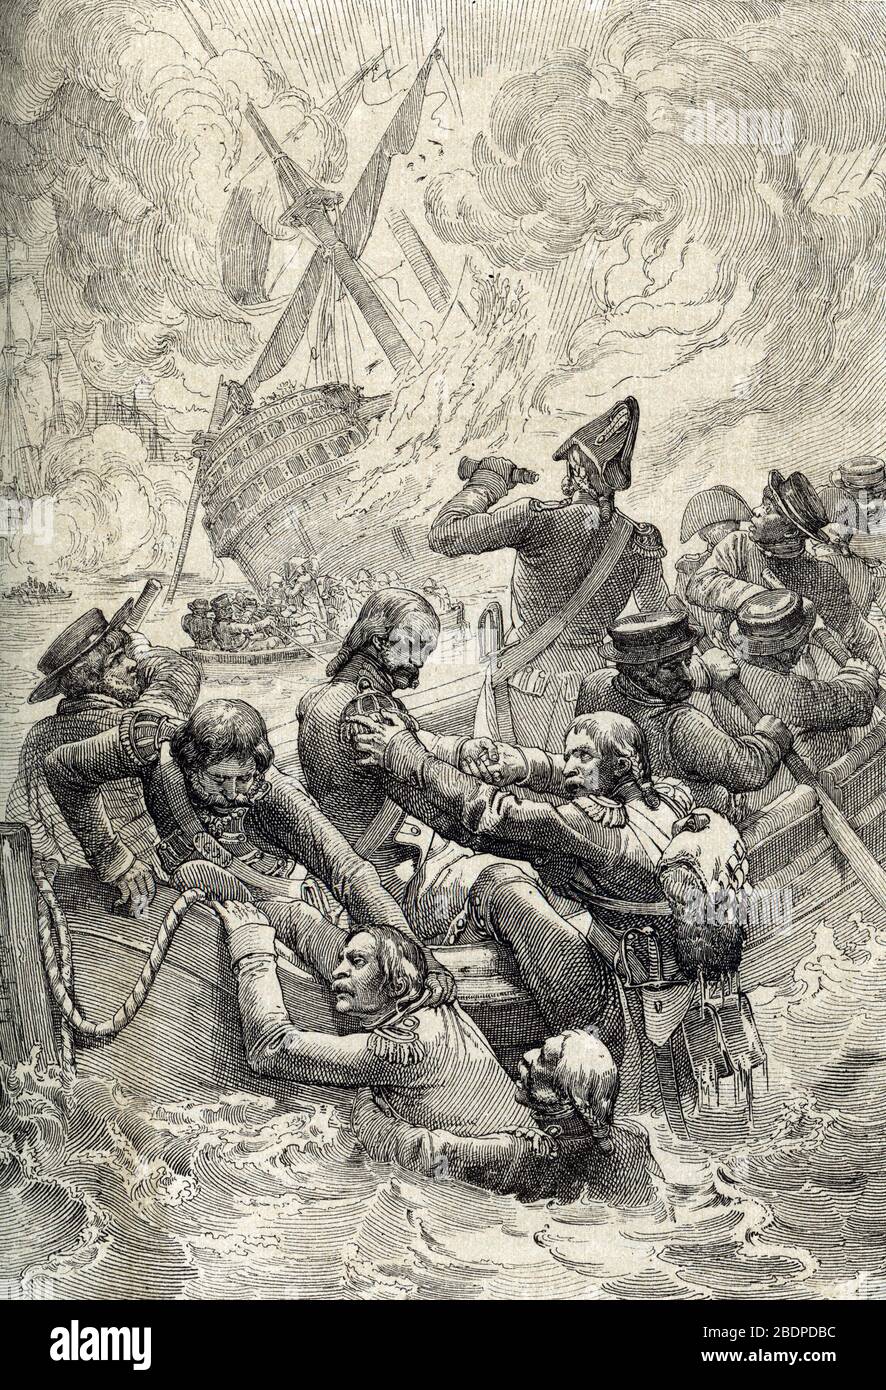 Campagne (Expedition) d'Egypte : la destruction du navire 'L'orient' lors de la bataille du Nil (bataille d'Aboukir) en Aout 1798 (Battle of aboukir b Stock Photo